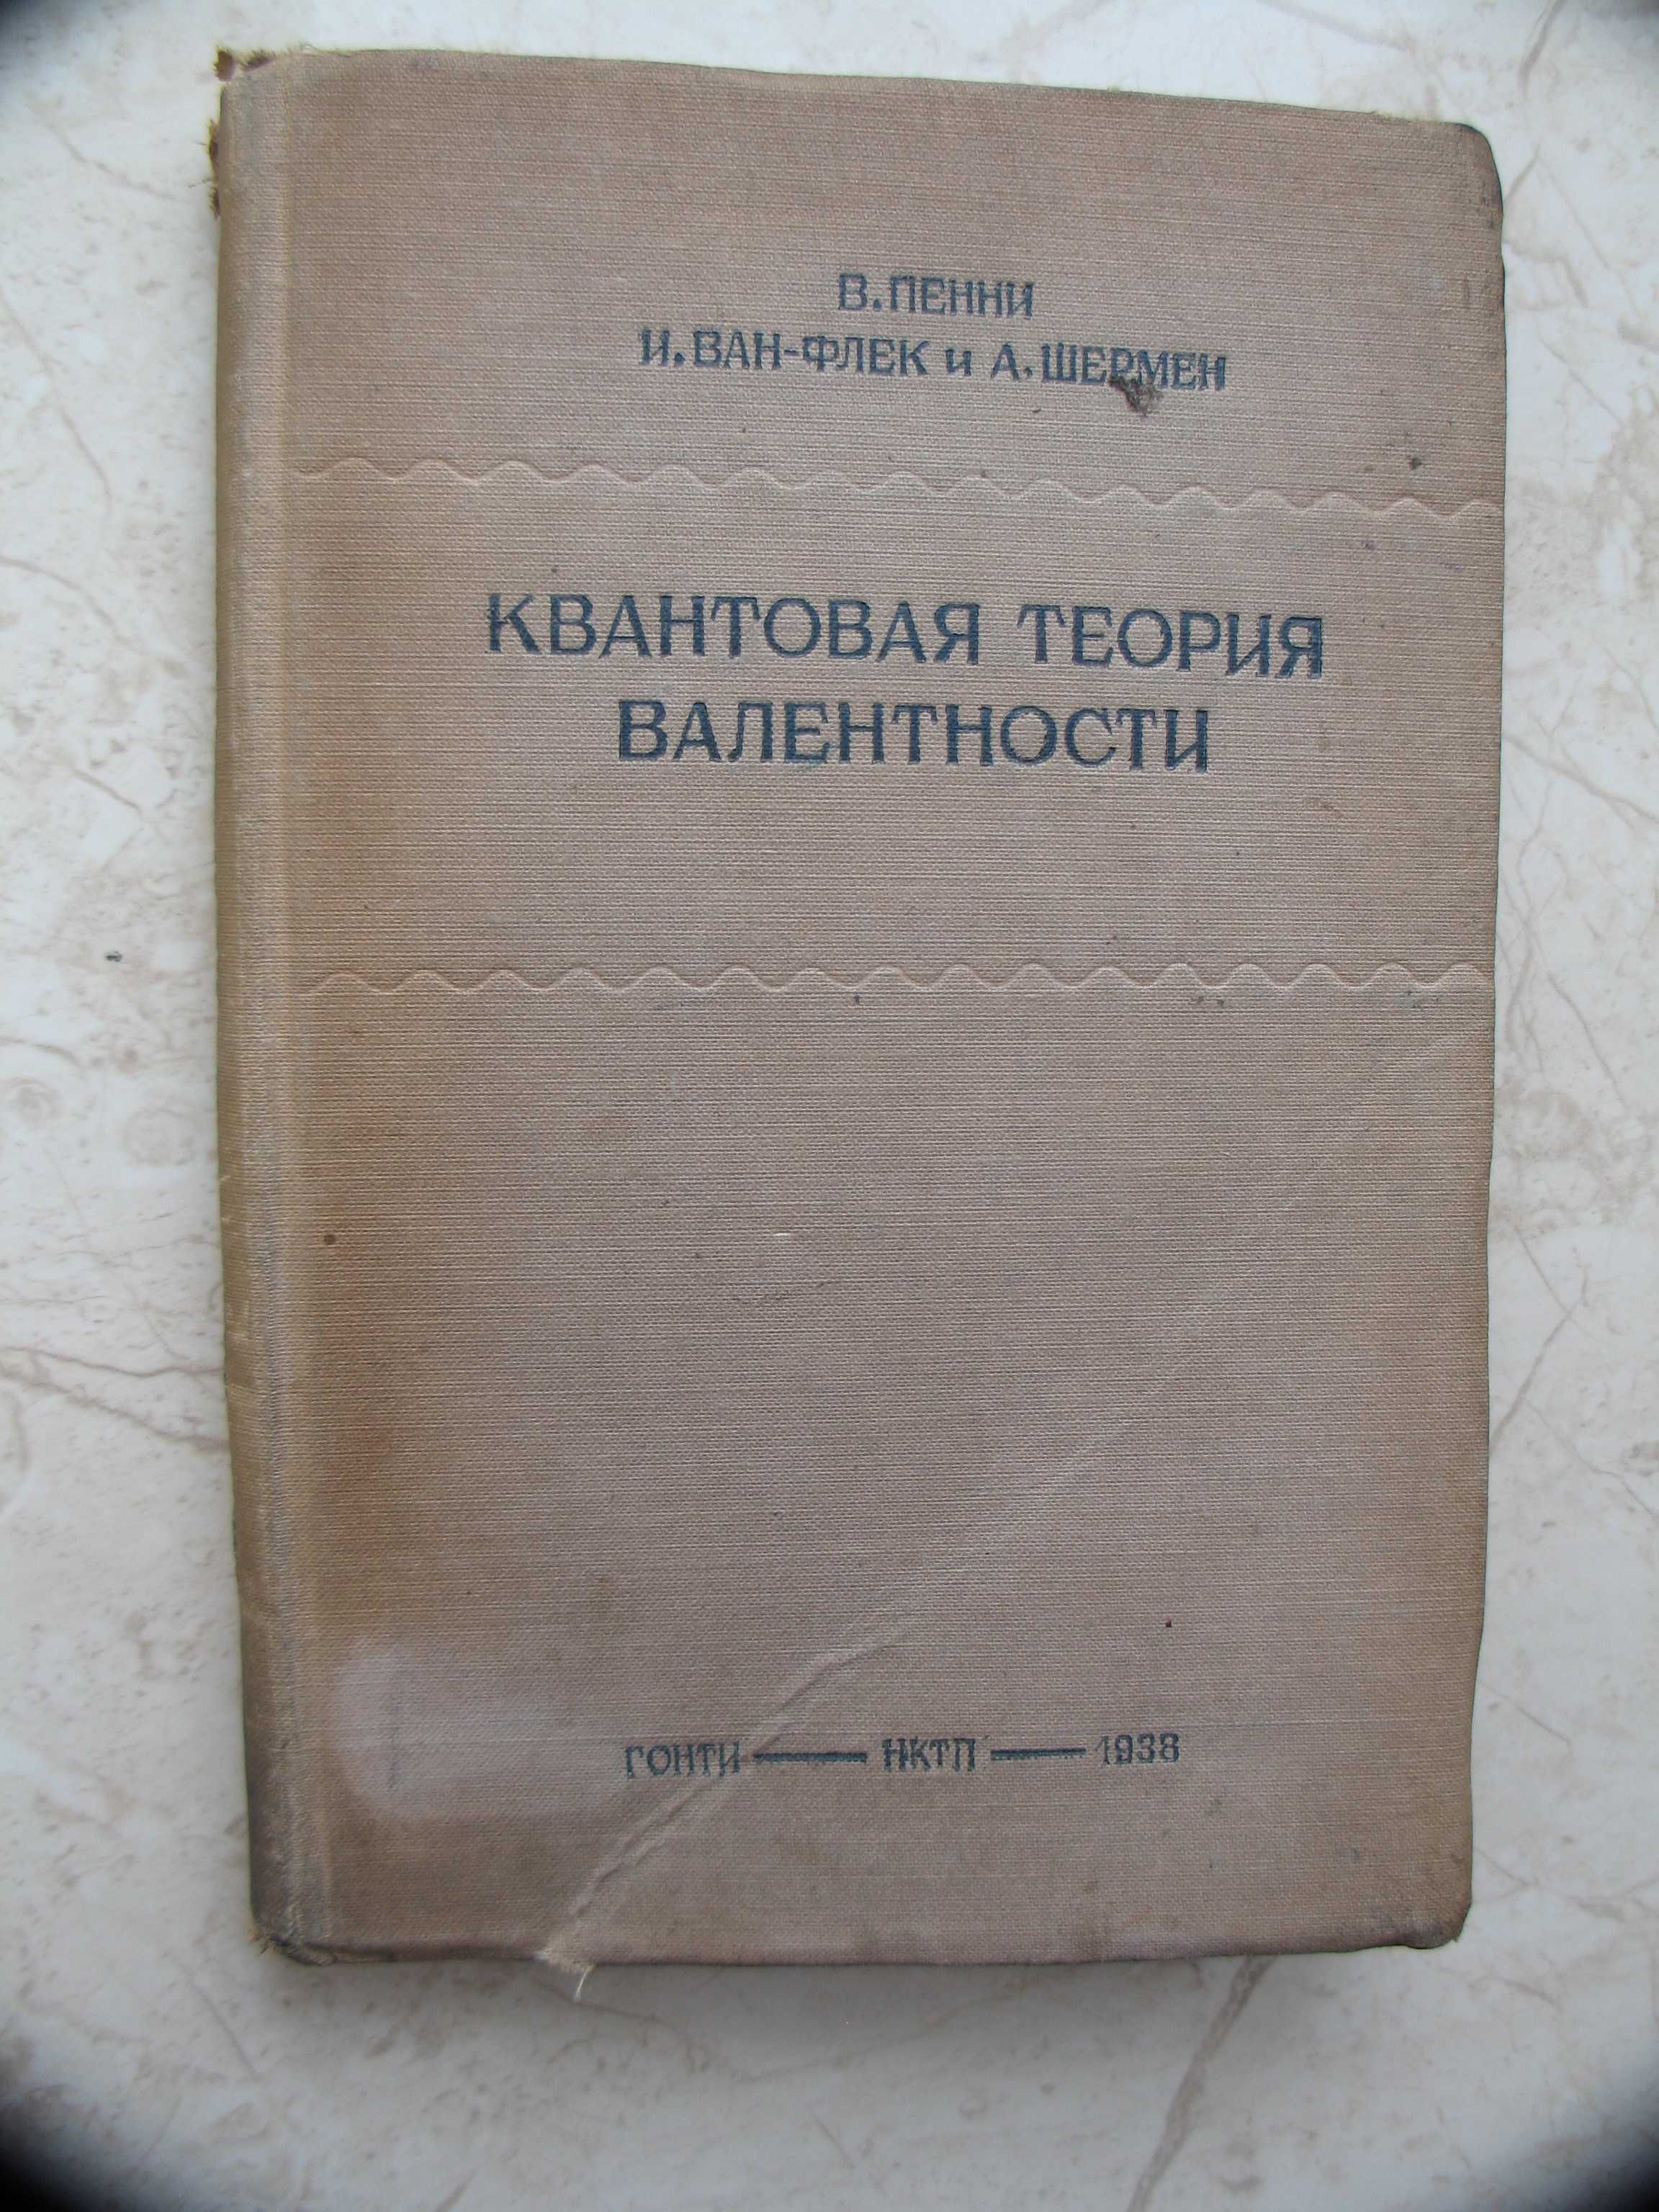 "Квантовая теория валентности" В.Пенни, И.Ван-Флек, А.Шермен, 1938 год